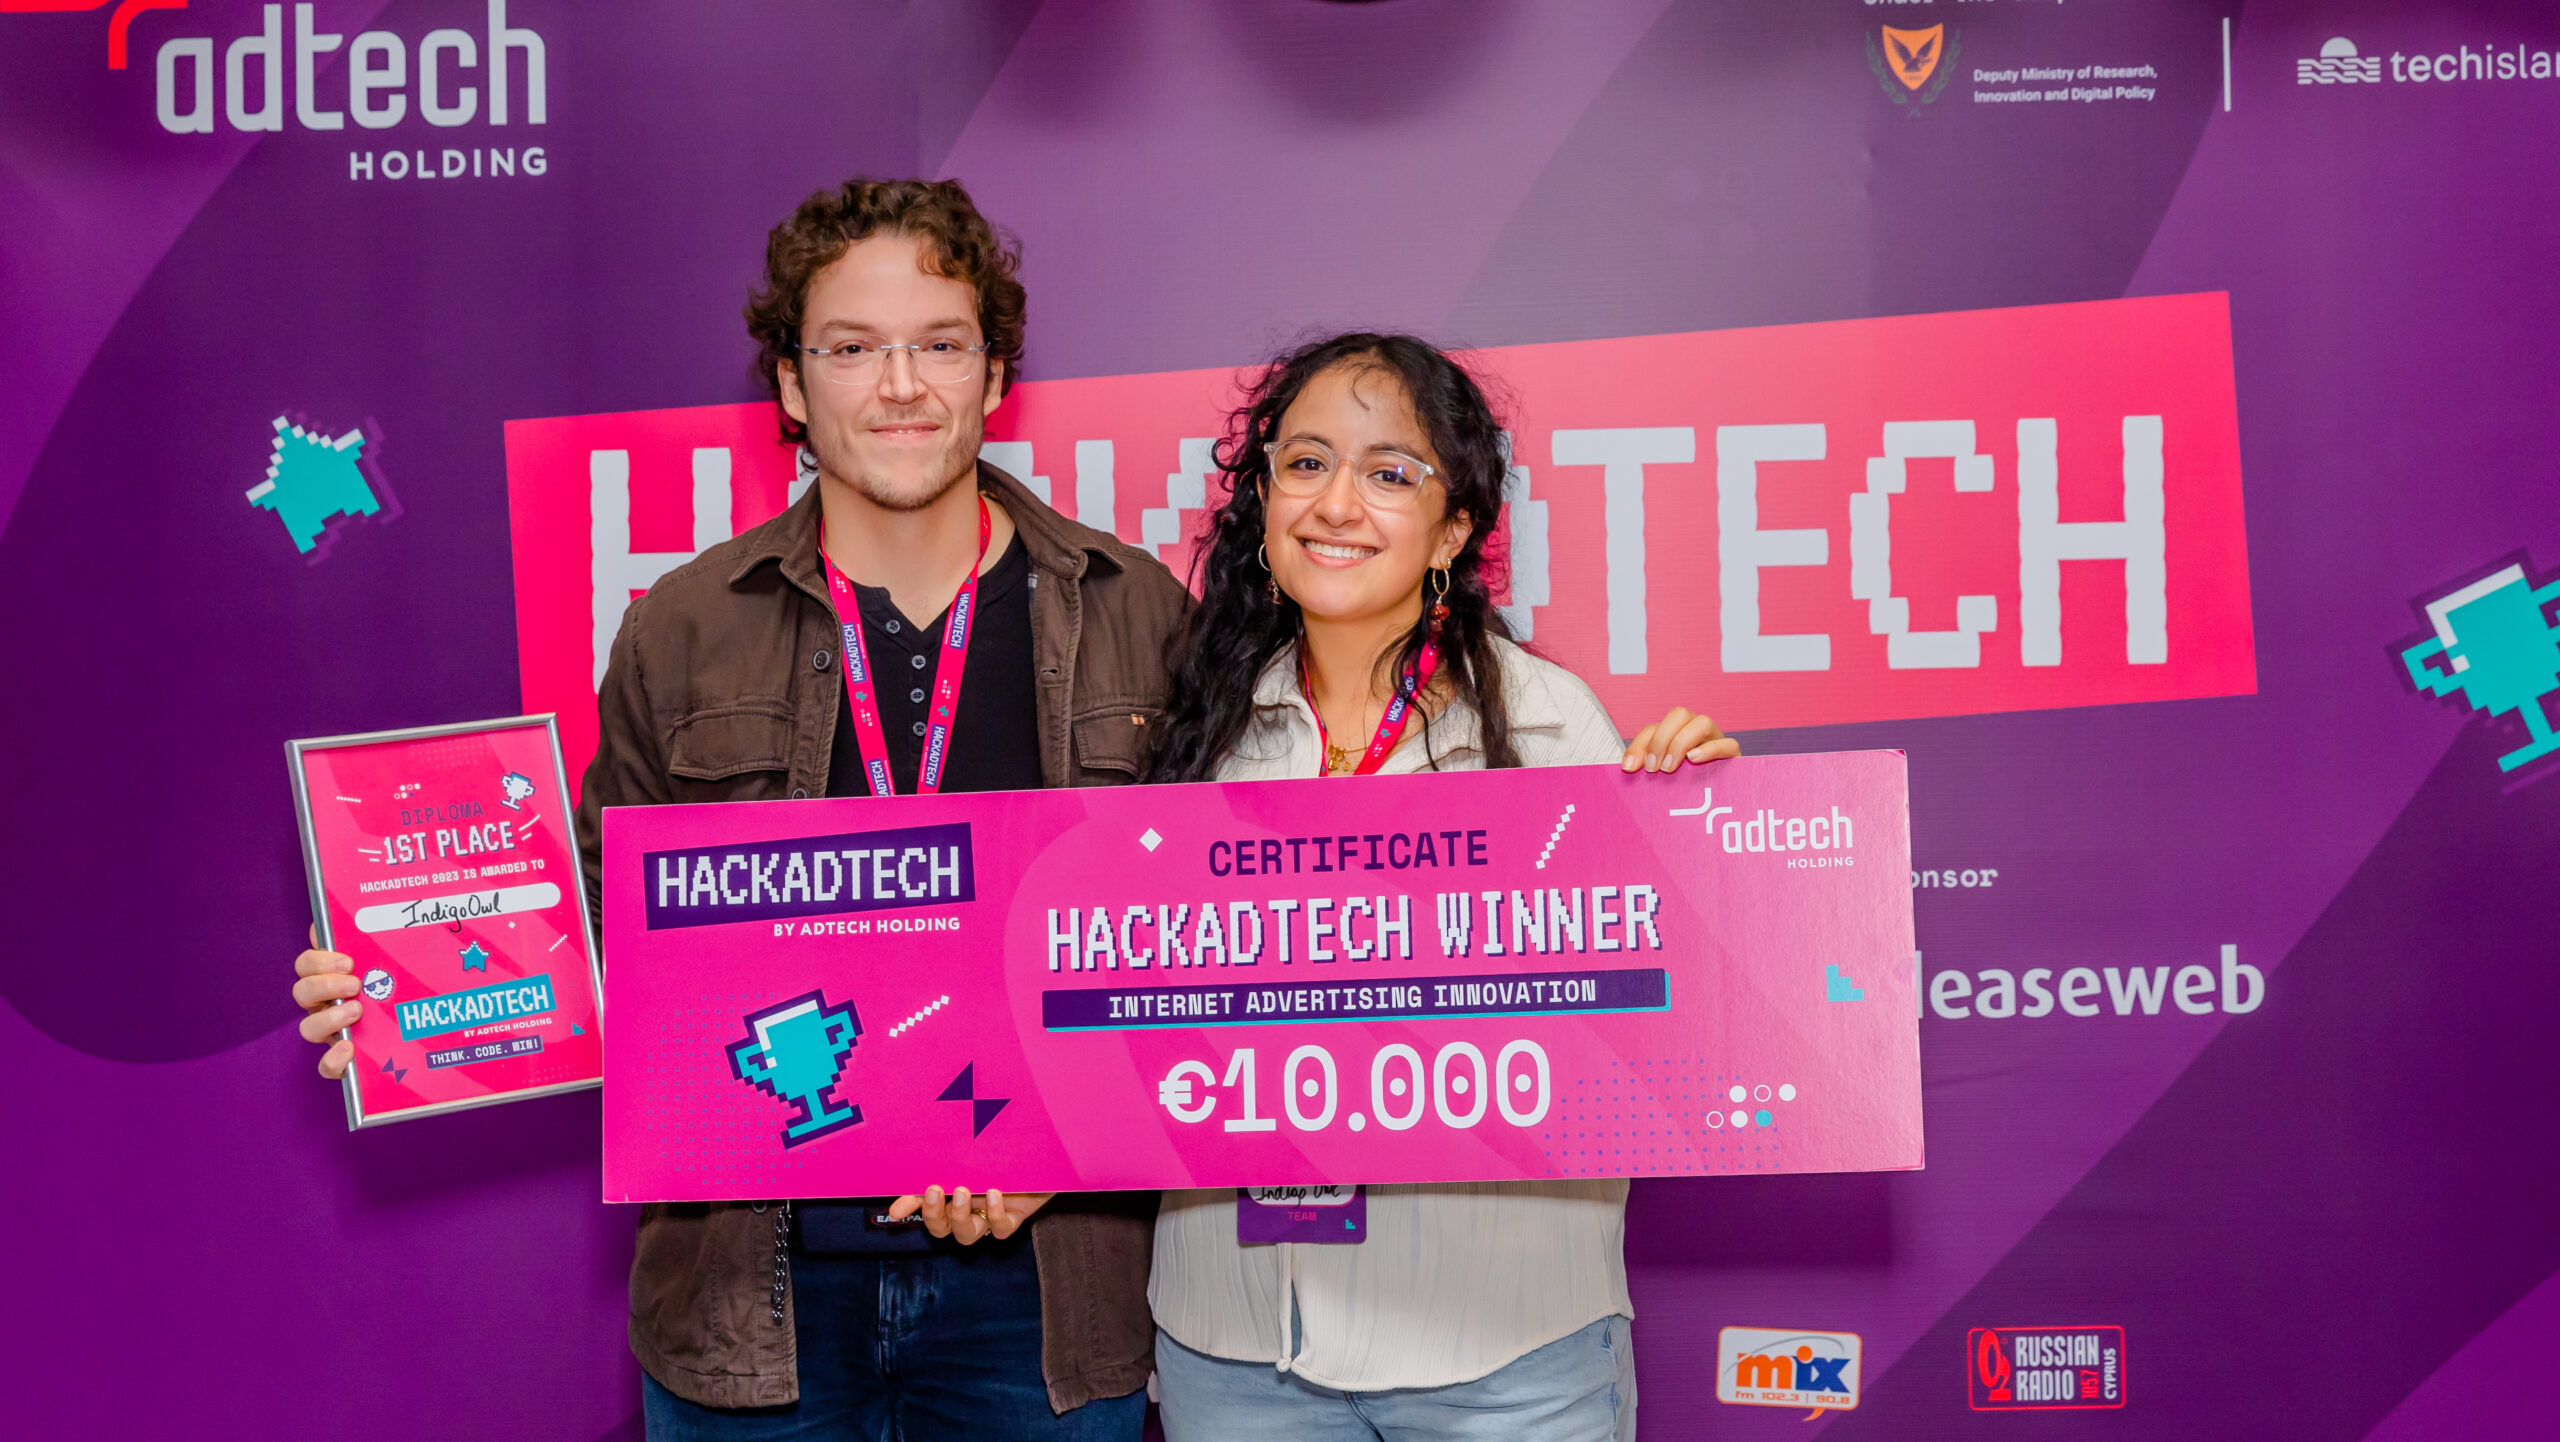 hackathon-winners-adtech-category-presentation